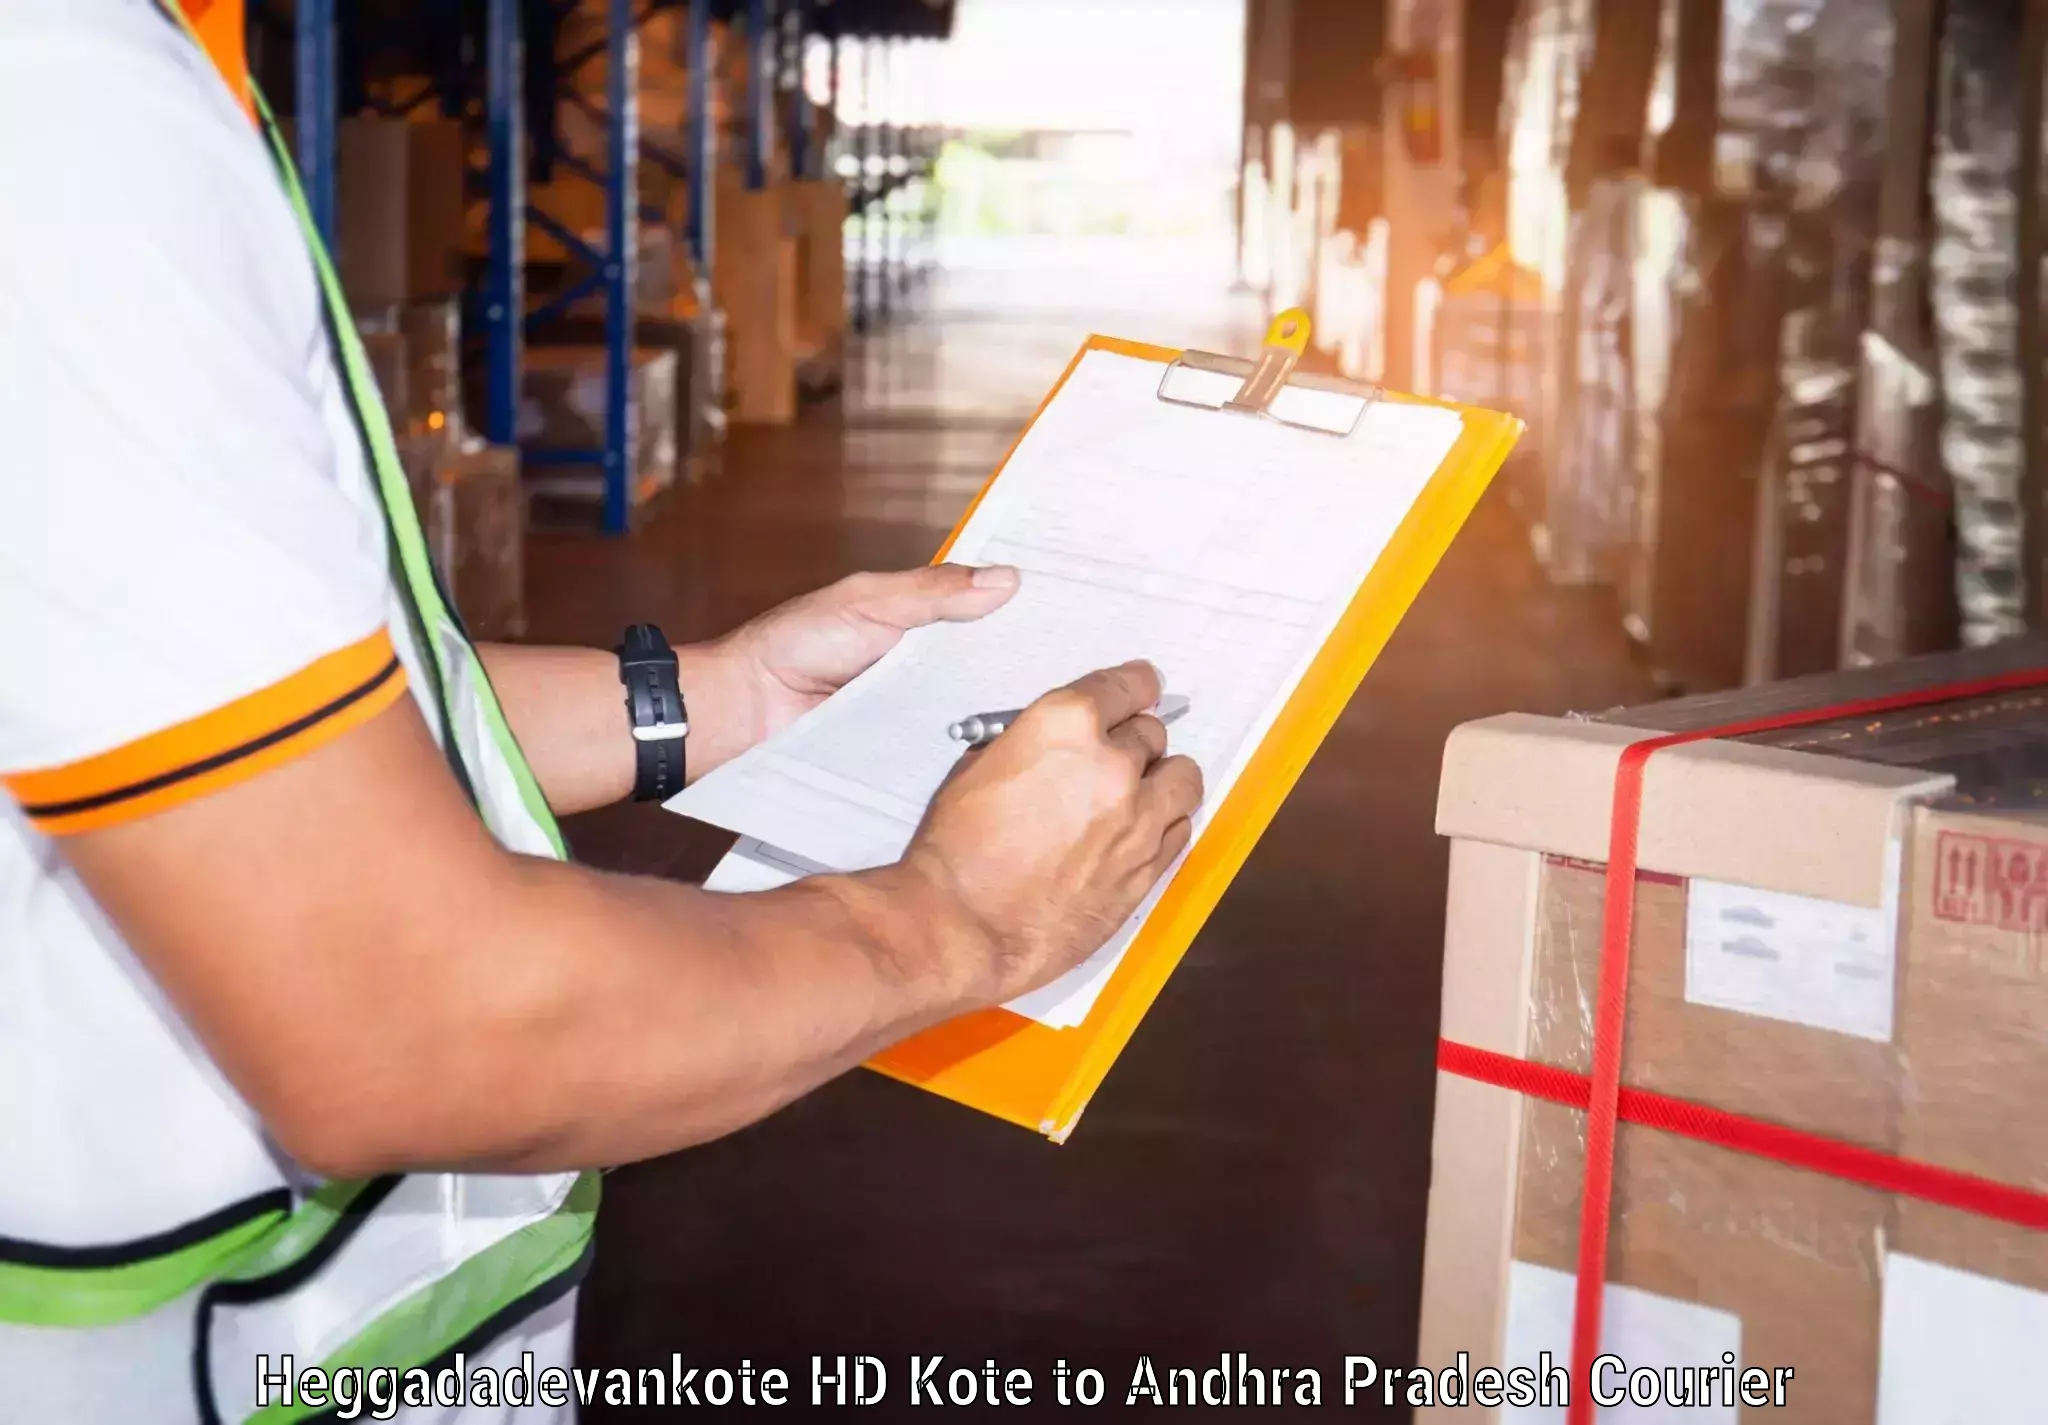 Efficient freight service Heggadadevankote HD Kote to Venkatagiri